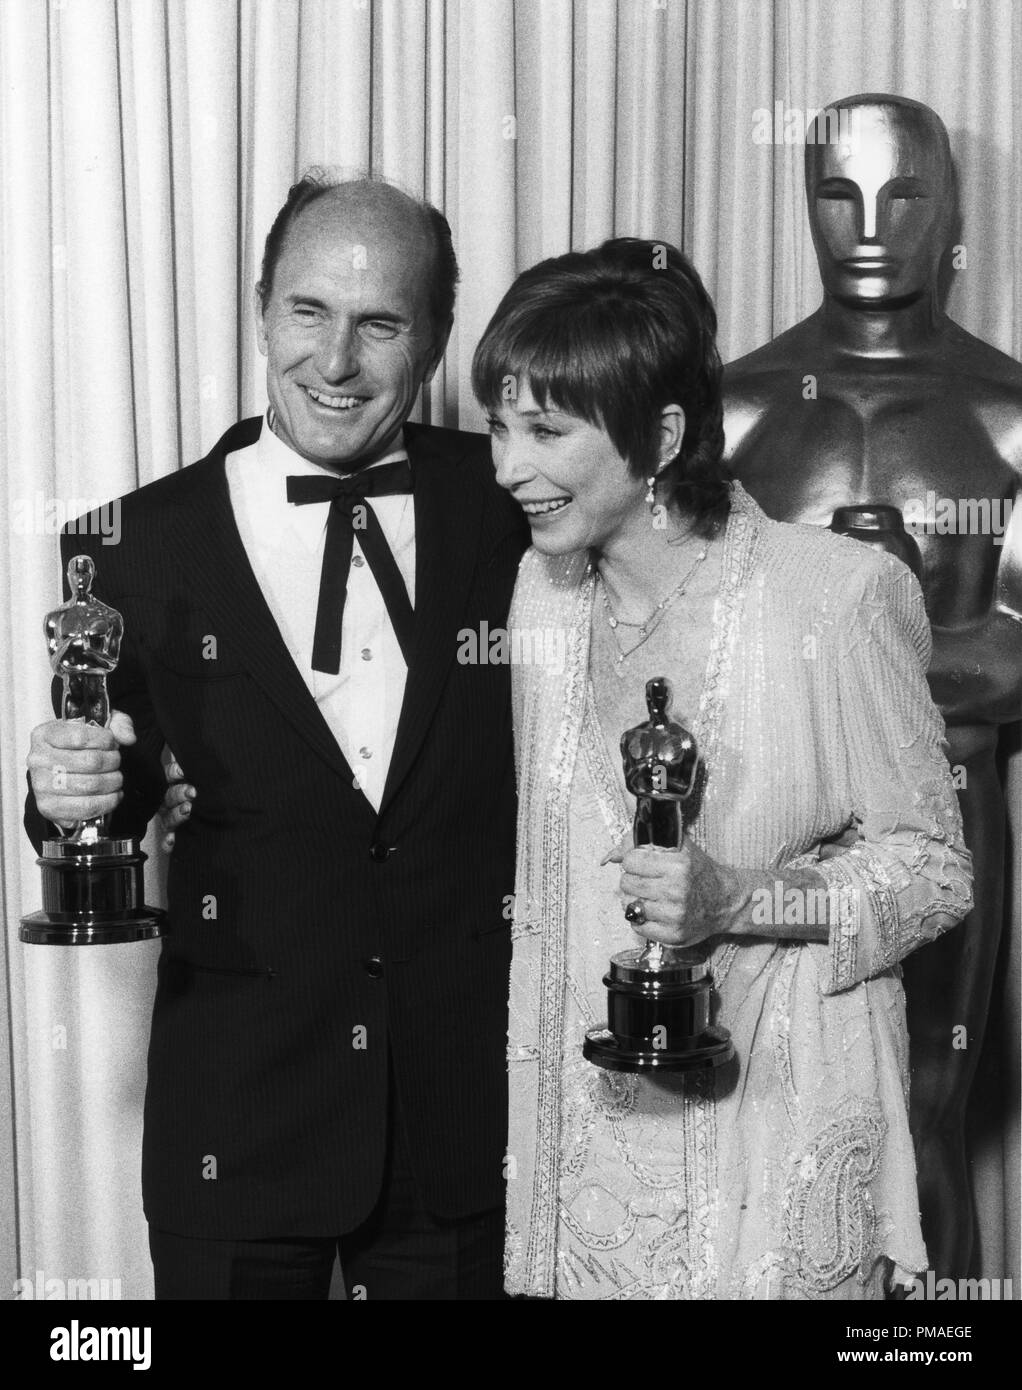 Robert Duvall, Shirley MacLaine auf der 56. jährlichen Academy Awards, 1999 Datei Referenz # 32509 892 THA Stockfoto